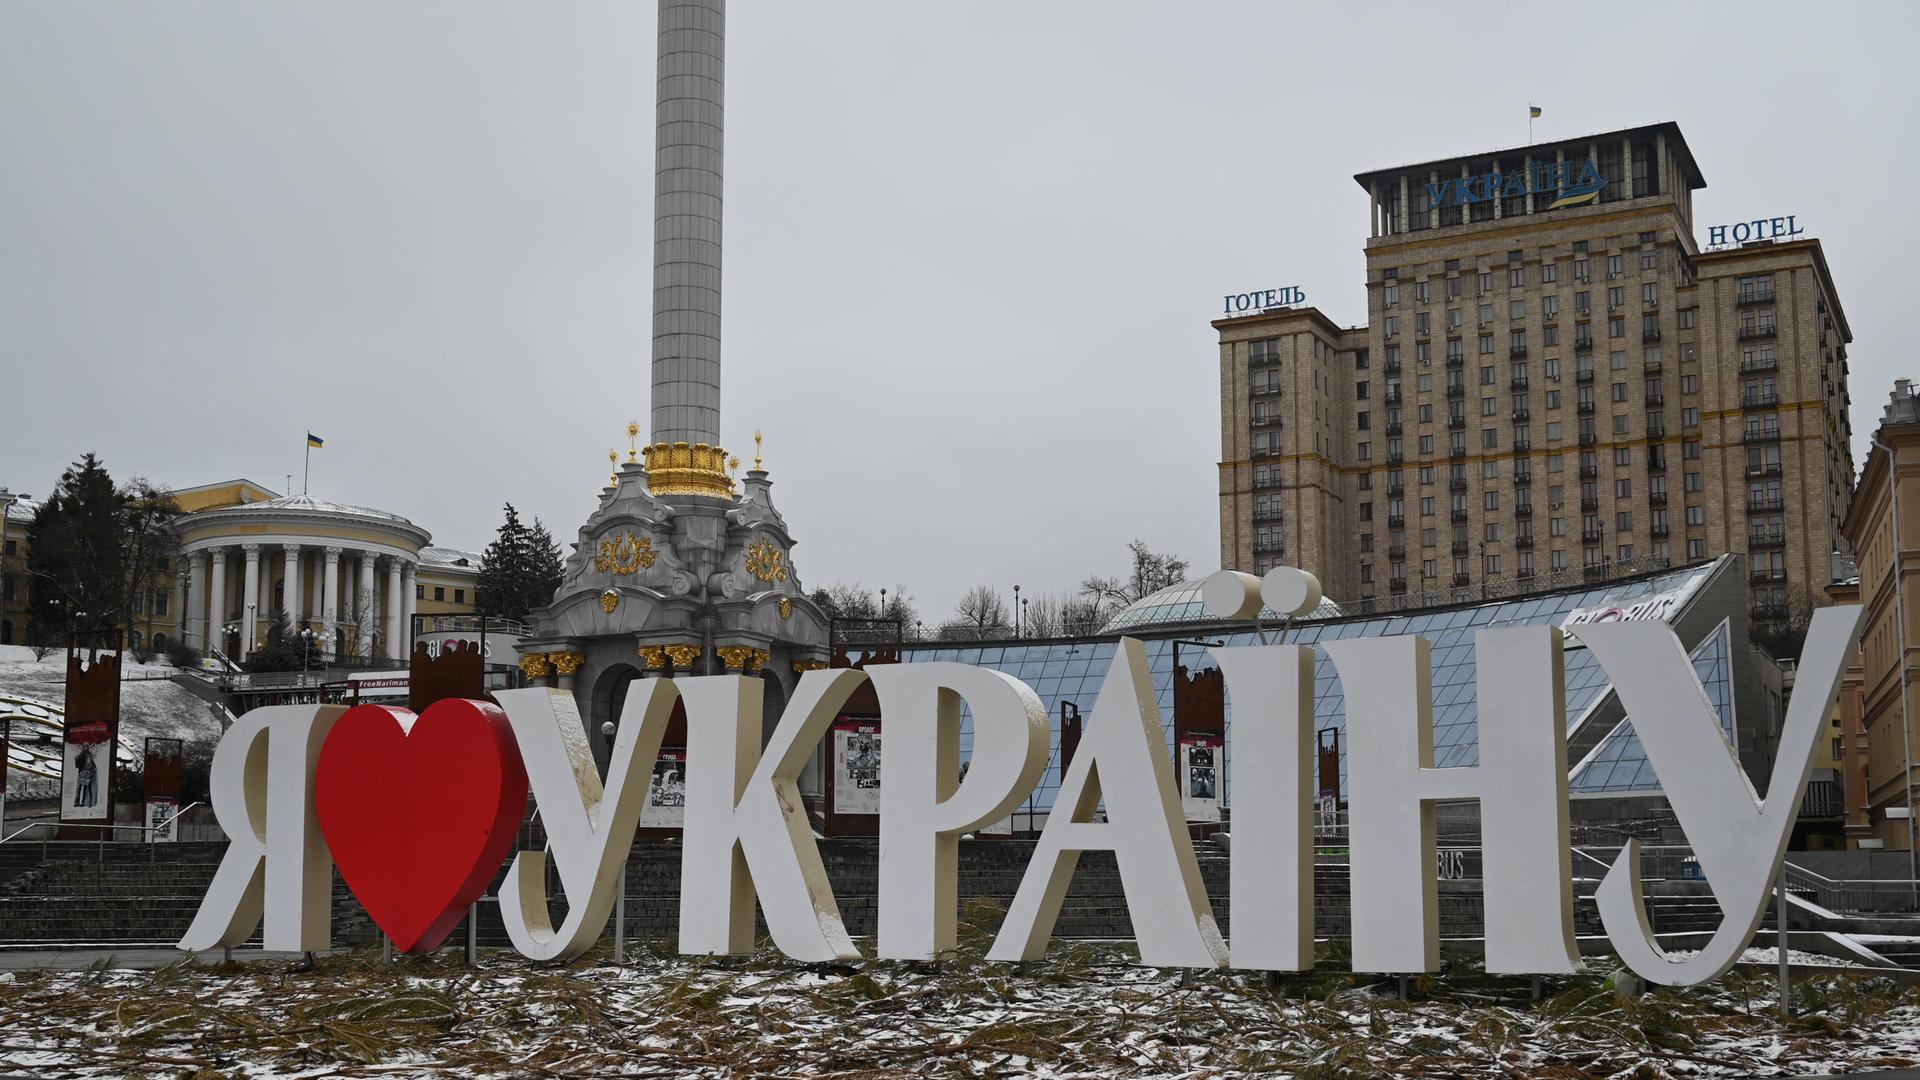 Der Maidan im Zentrum der ukrainischen Hauptstadt Kiew mit dem Schriftzug "Ich liebe die Ukraine" und dem Hotel Moskau im Hintergrund.  